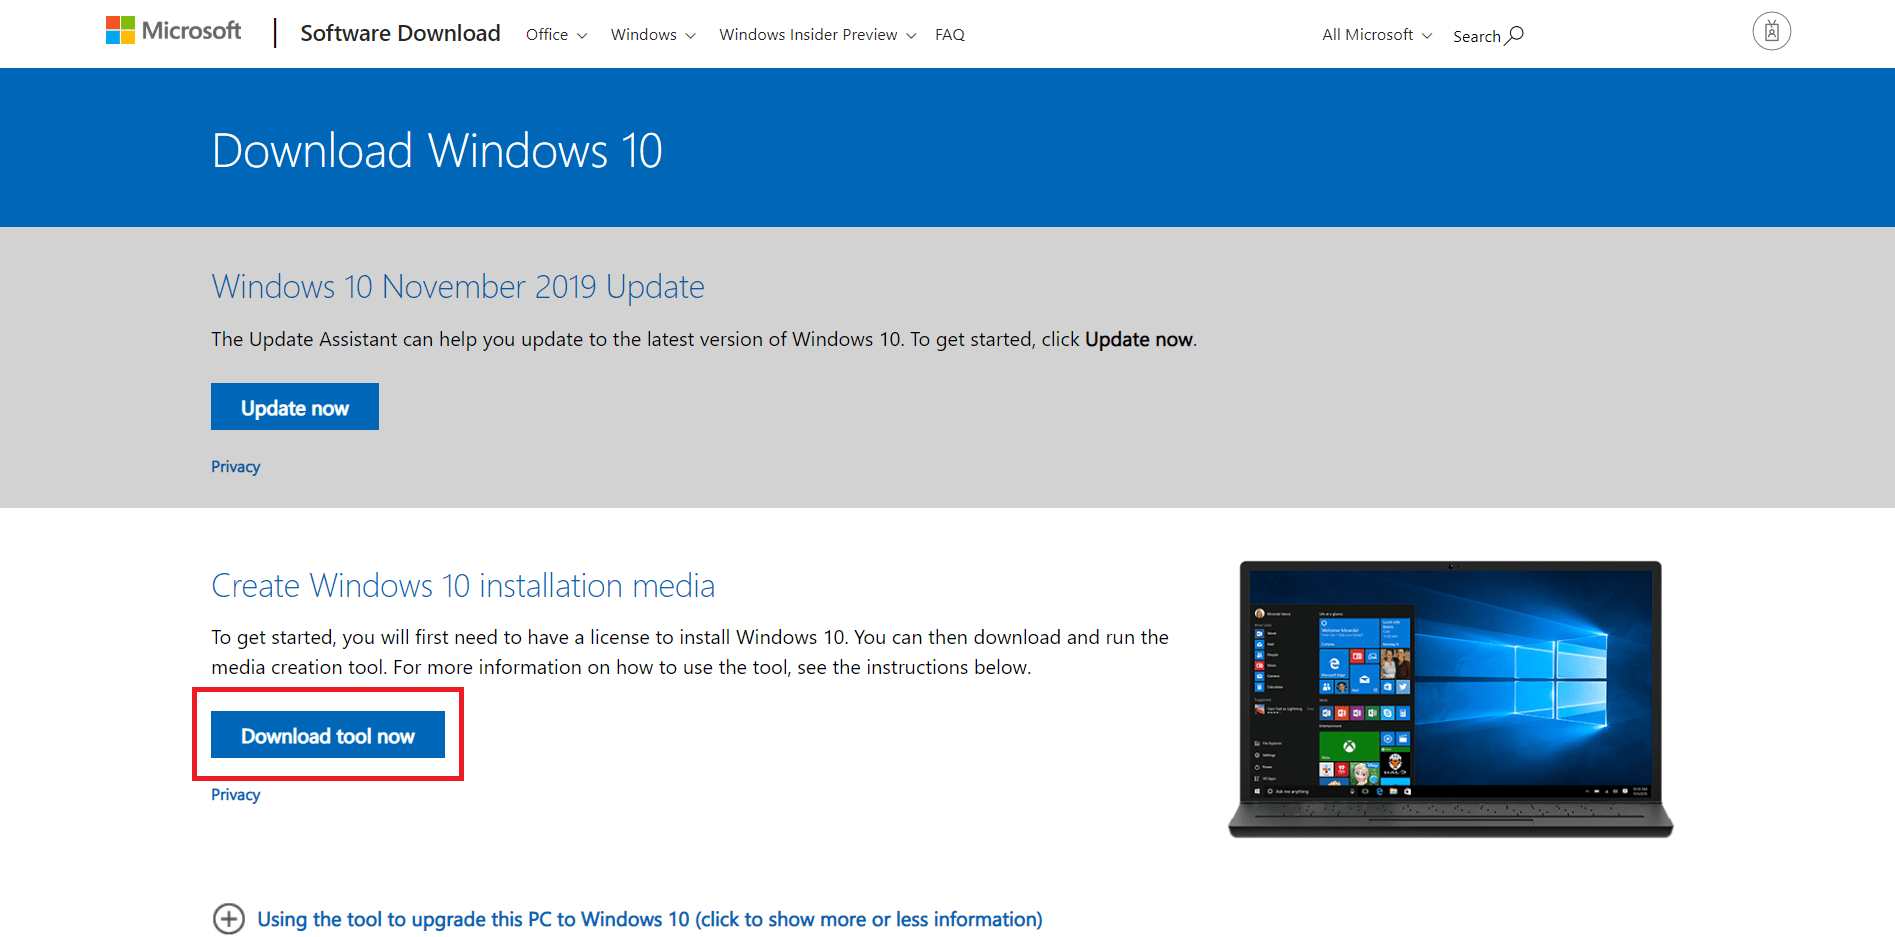 upgradovať Windows 7  na Windows 10 vo VMWare